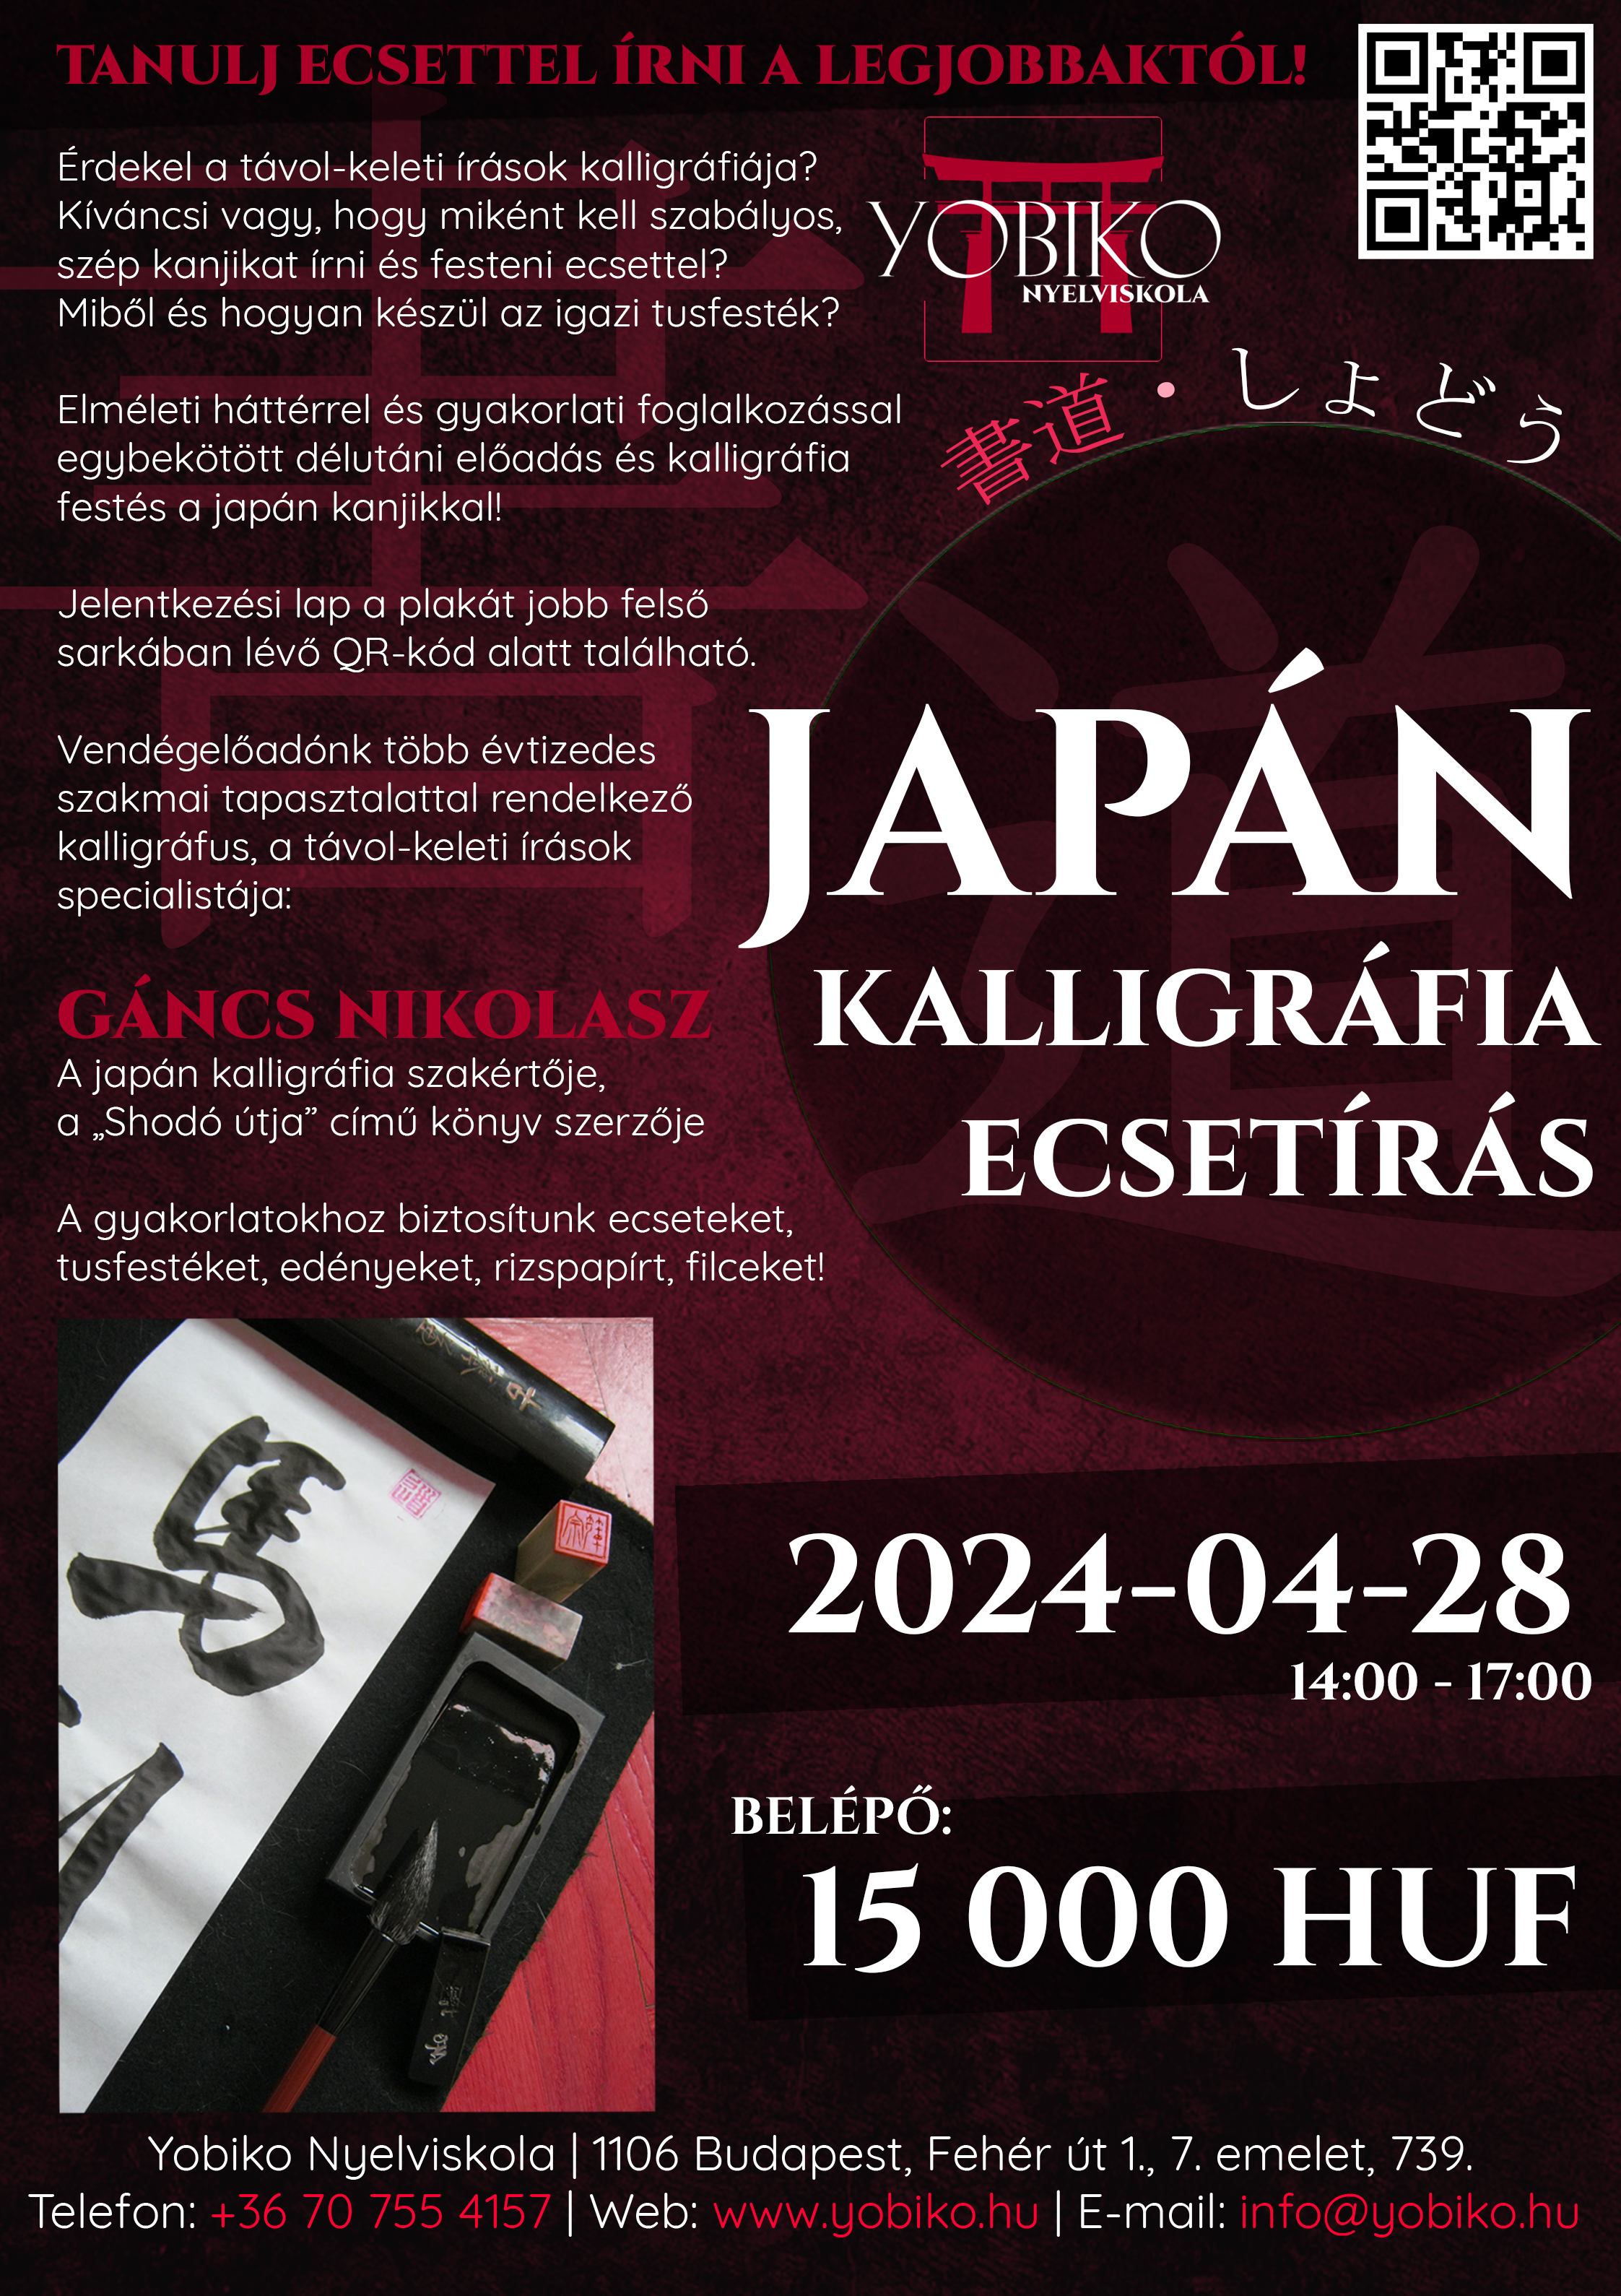 Kalligráfia 書道 – Ecsetírás japán írásjegyekkel – Tanulj szakavatott mestertől! (2024. április 28.)